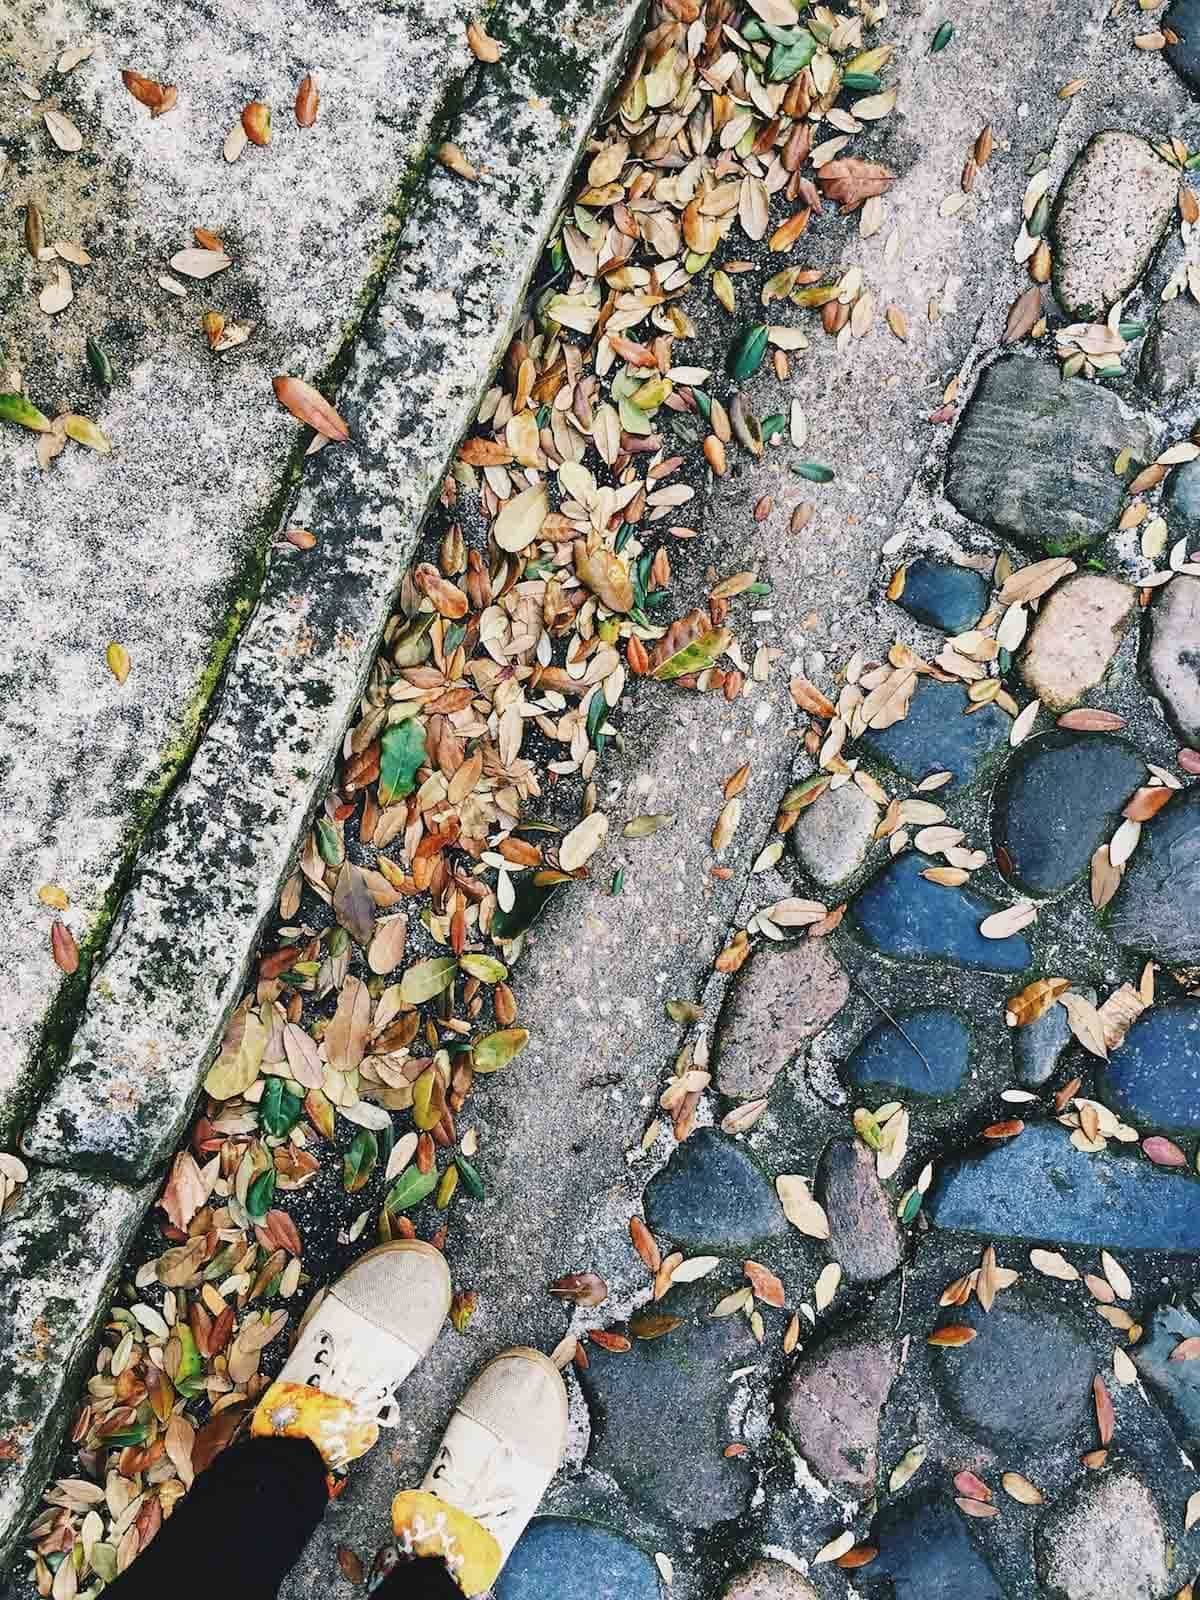 Feet on the sidewalk.